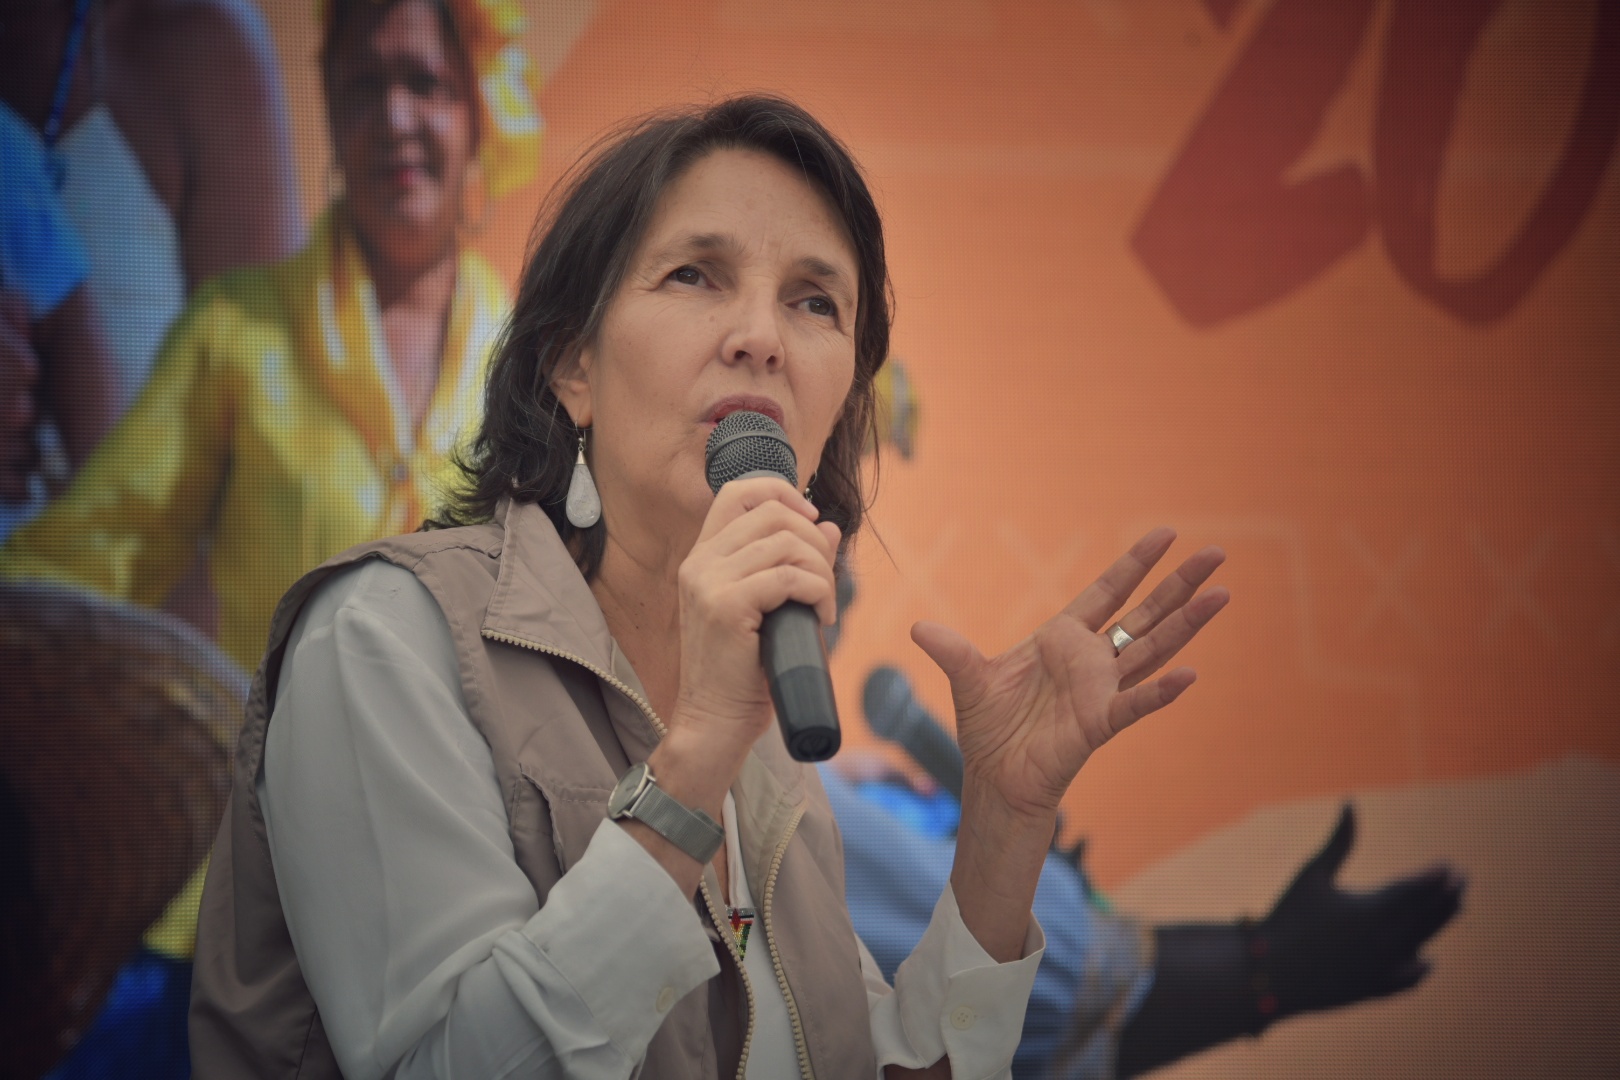 Durante la rendición de cuentas, María Gaitán Valencia explicó que uno de los grandes desafíos del CNMH es recuperar la confianza con las comunidades y sus organizaciones.